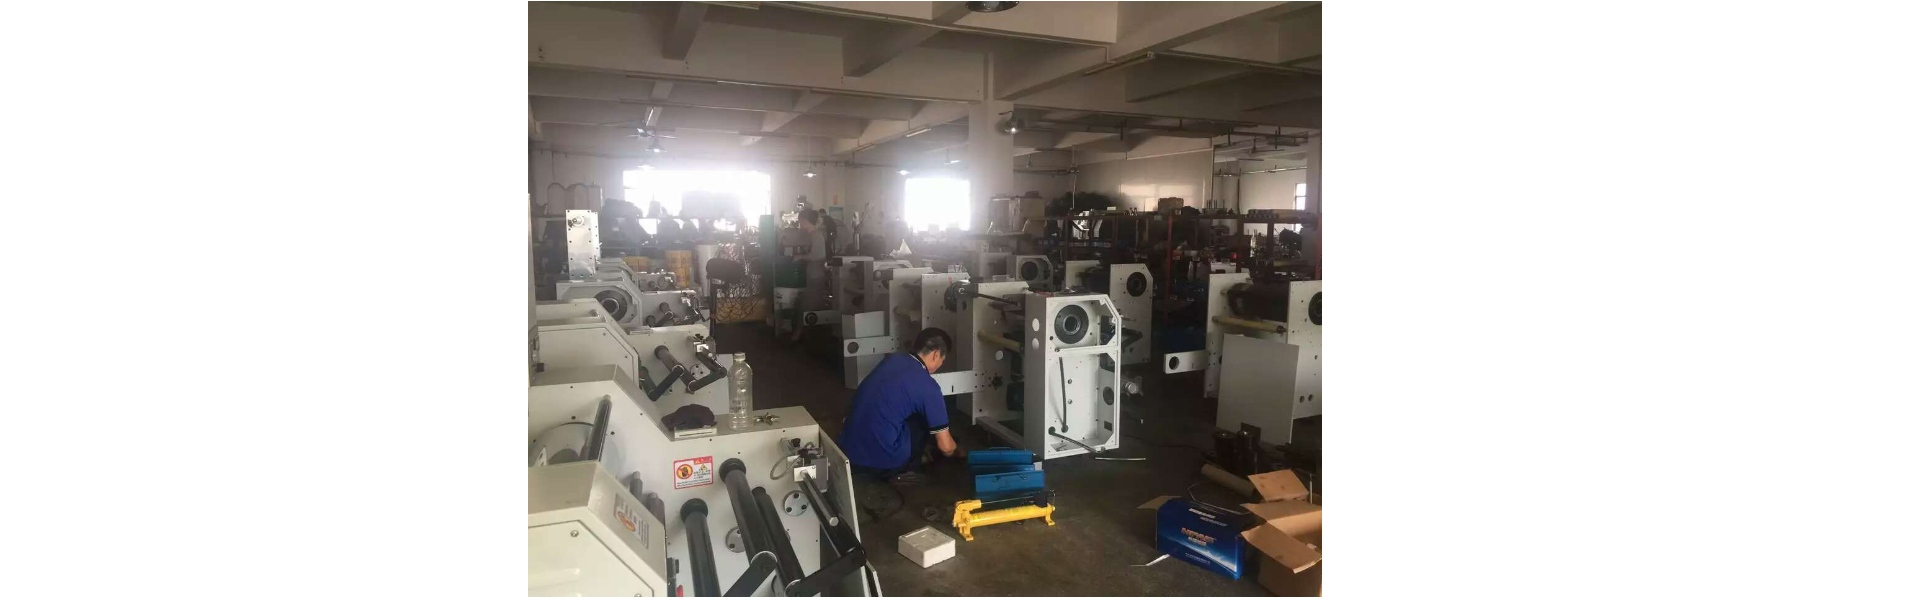 Dong Guan Weineng Machinery Technology Co., Ltd.